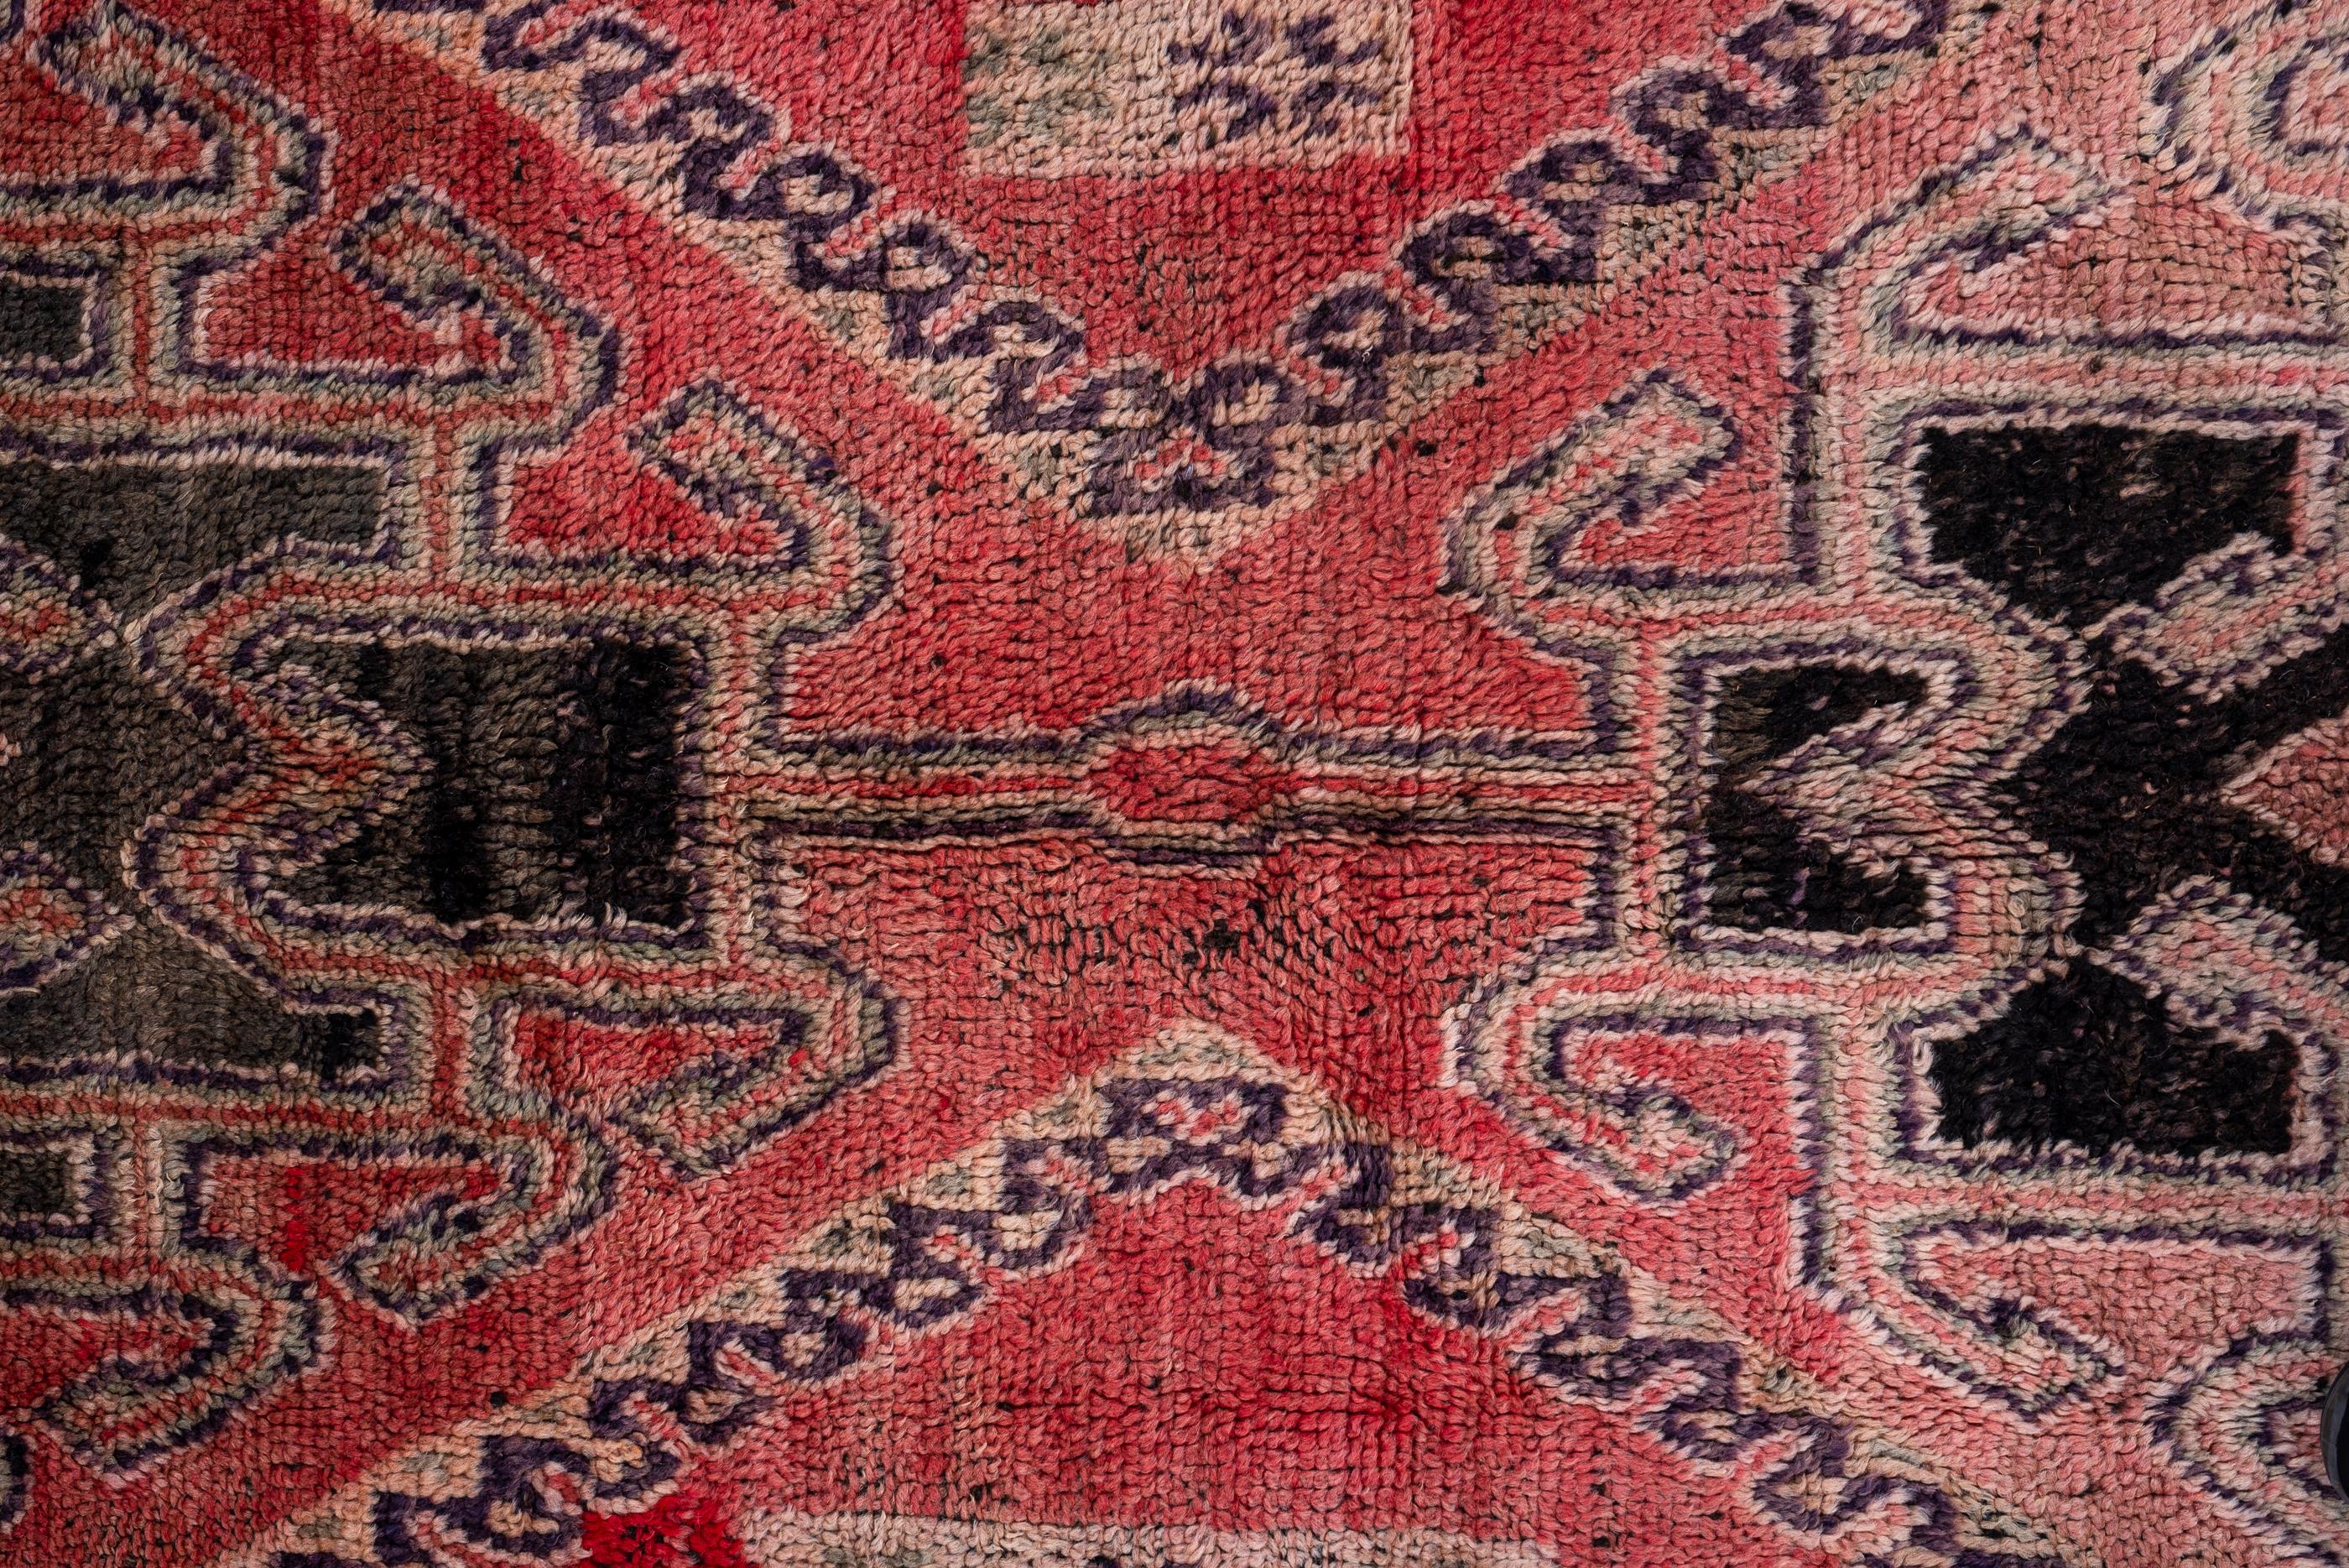 Tribal Vintage Moroccan Rug Design For Sale